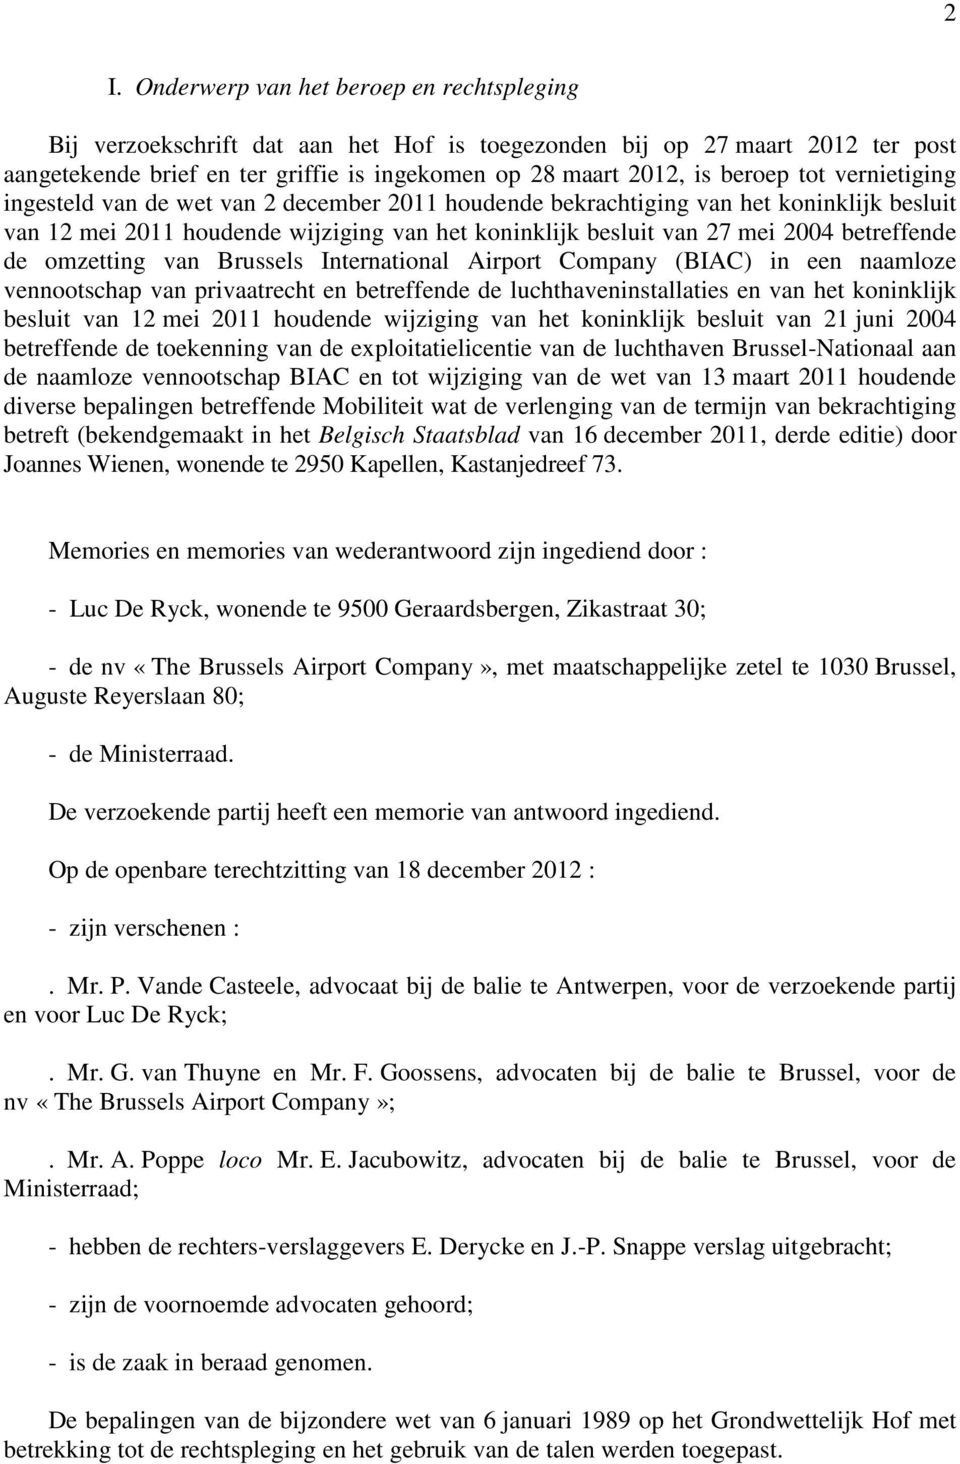 betreffende de omzetting van Brussels International Airport Company (BIAC) in een naamloze vennootschap van privaatrecht en betreffende de luchthaveninstallaties en van het koninklijk besluit van 12